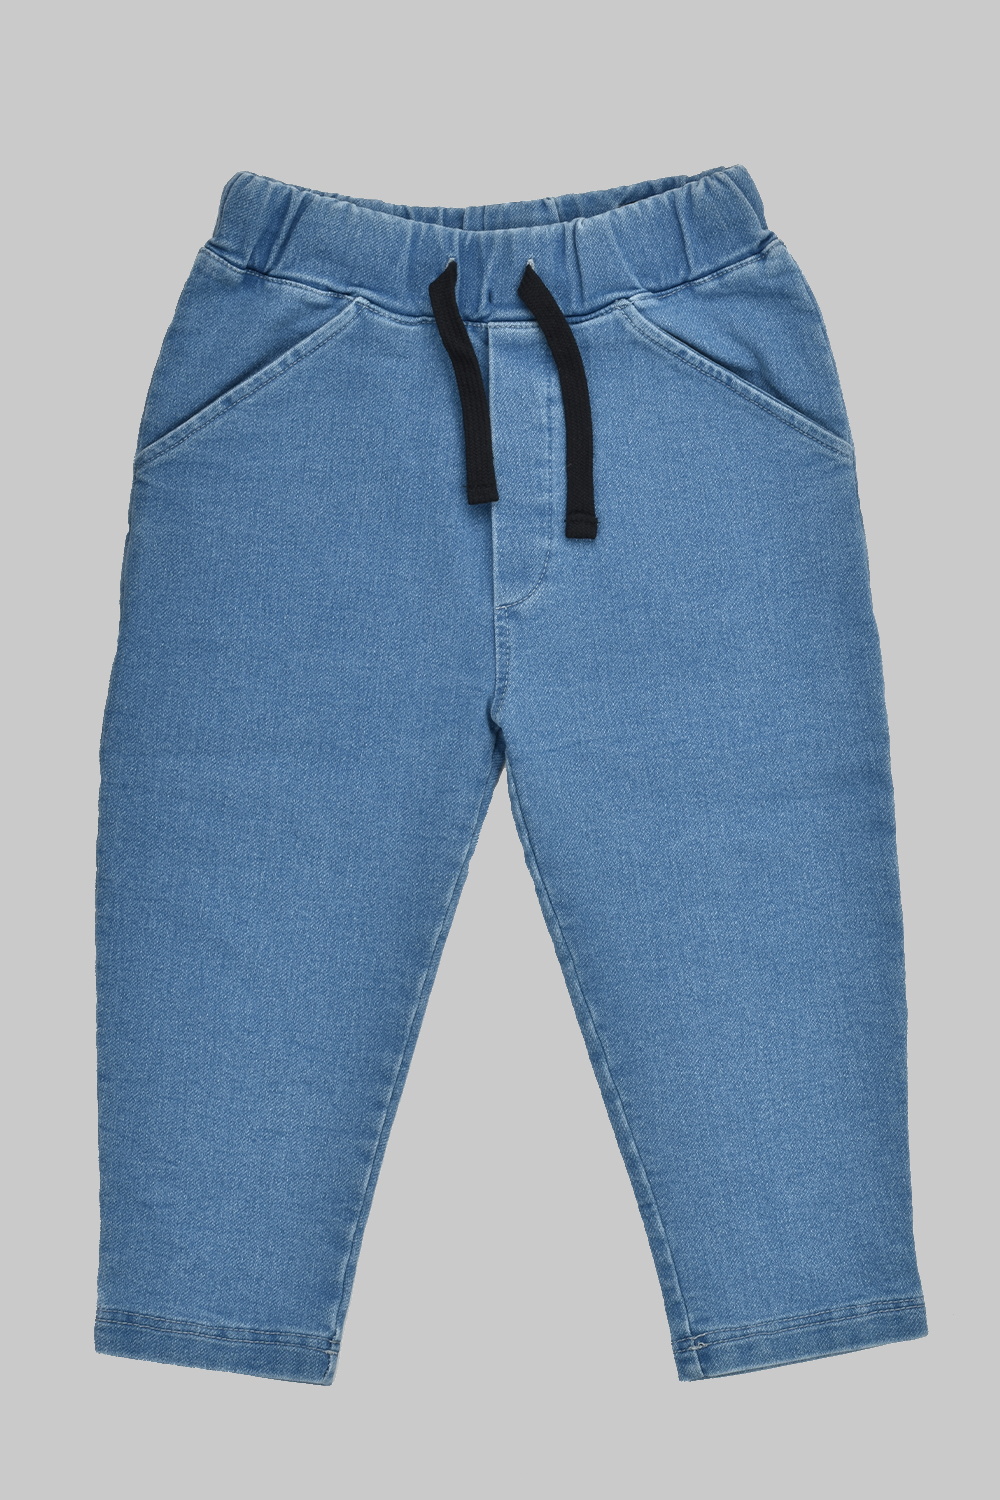 Blue Jeans Comfort Fit Pants